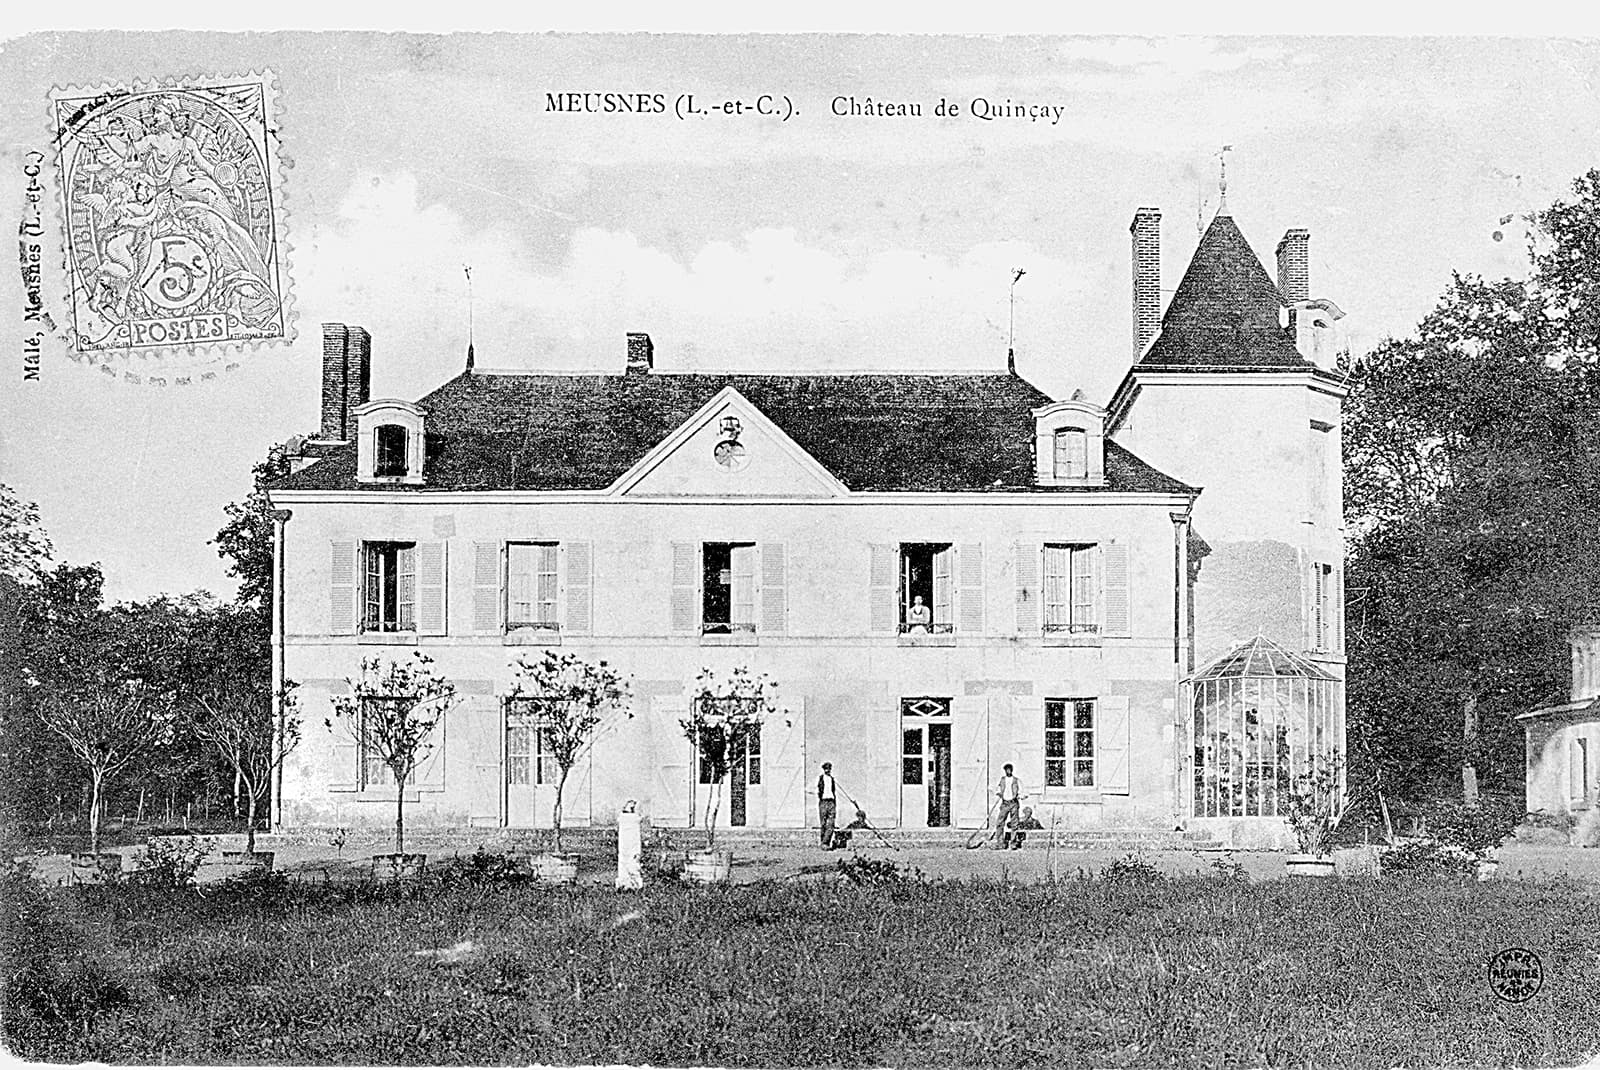 VINEYARD - Château de Quinçay